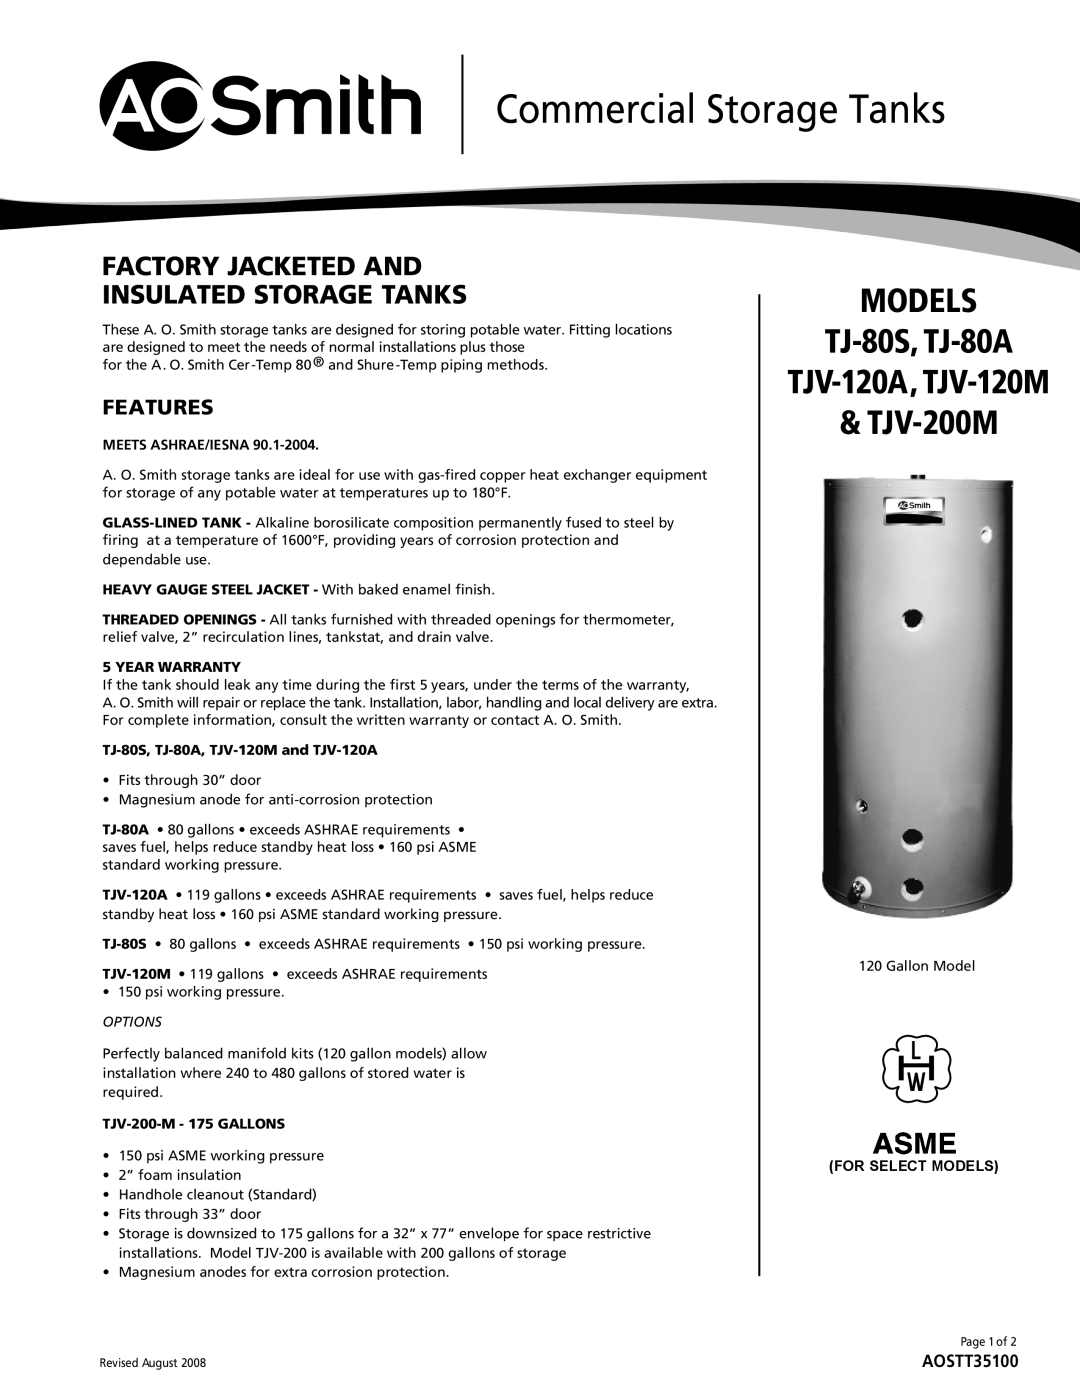 A.O. Smith TJ-80A warranty Commercial Storage Tanks, Meets Ashrae/Iesna, Year Warranty, TJV-200-M - 175 GALLONS, TJV-200M 